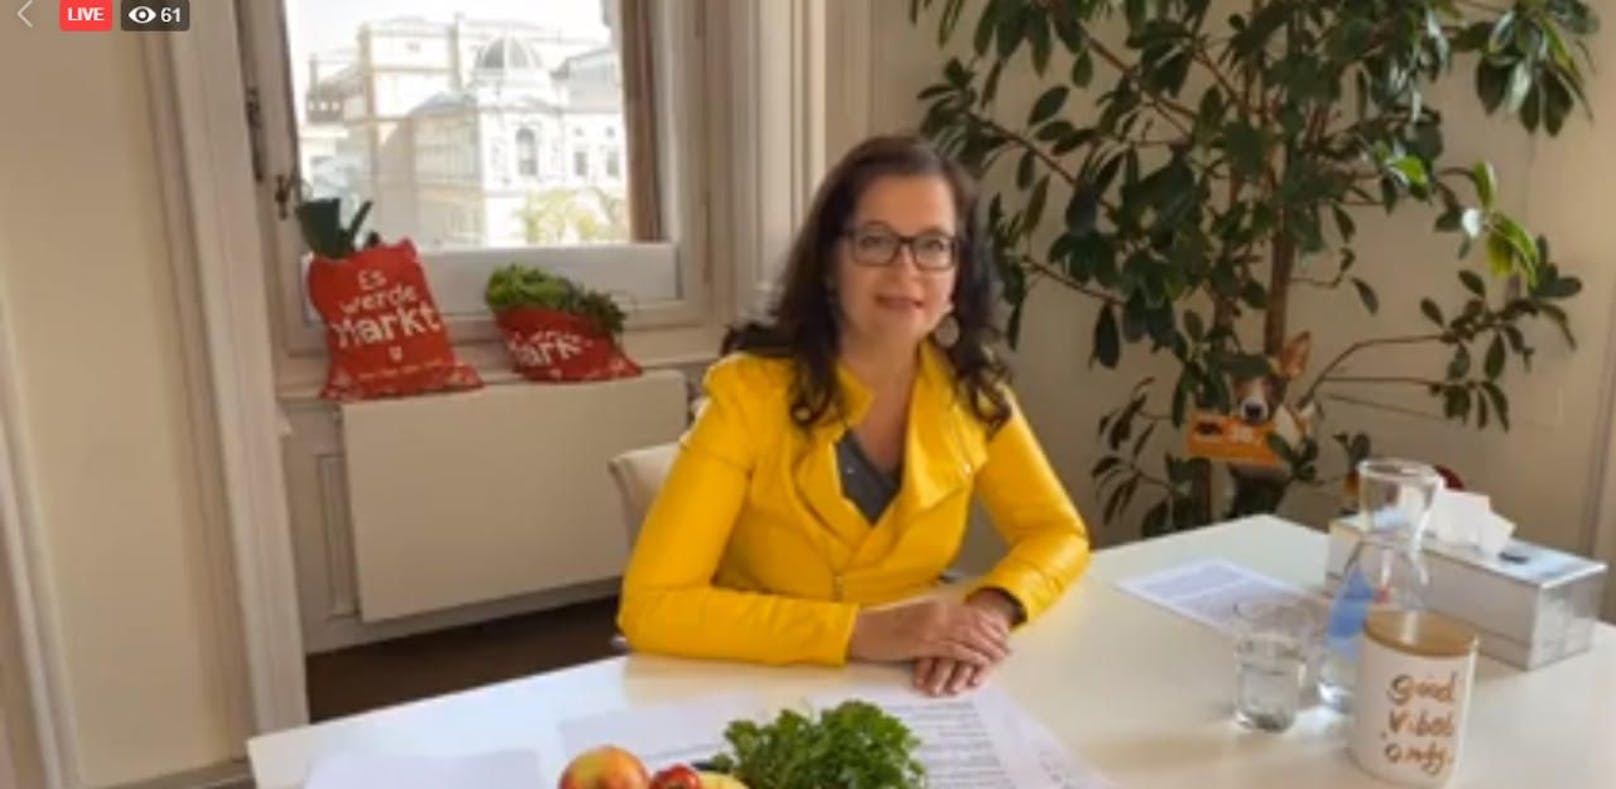 Ulli Sima (SPÖ) informiert via Livestream über neue Sicherheitsmaßnahmen für die Wiener Märkte.